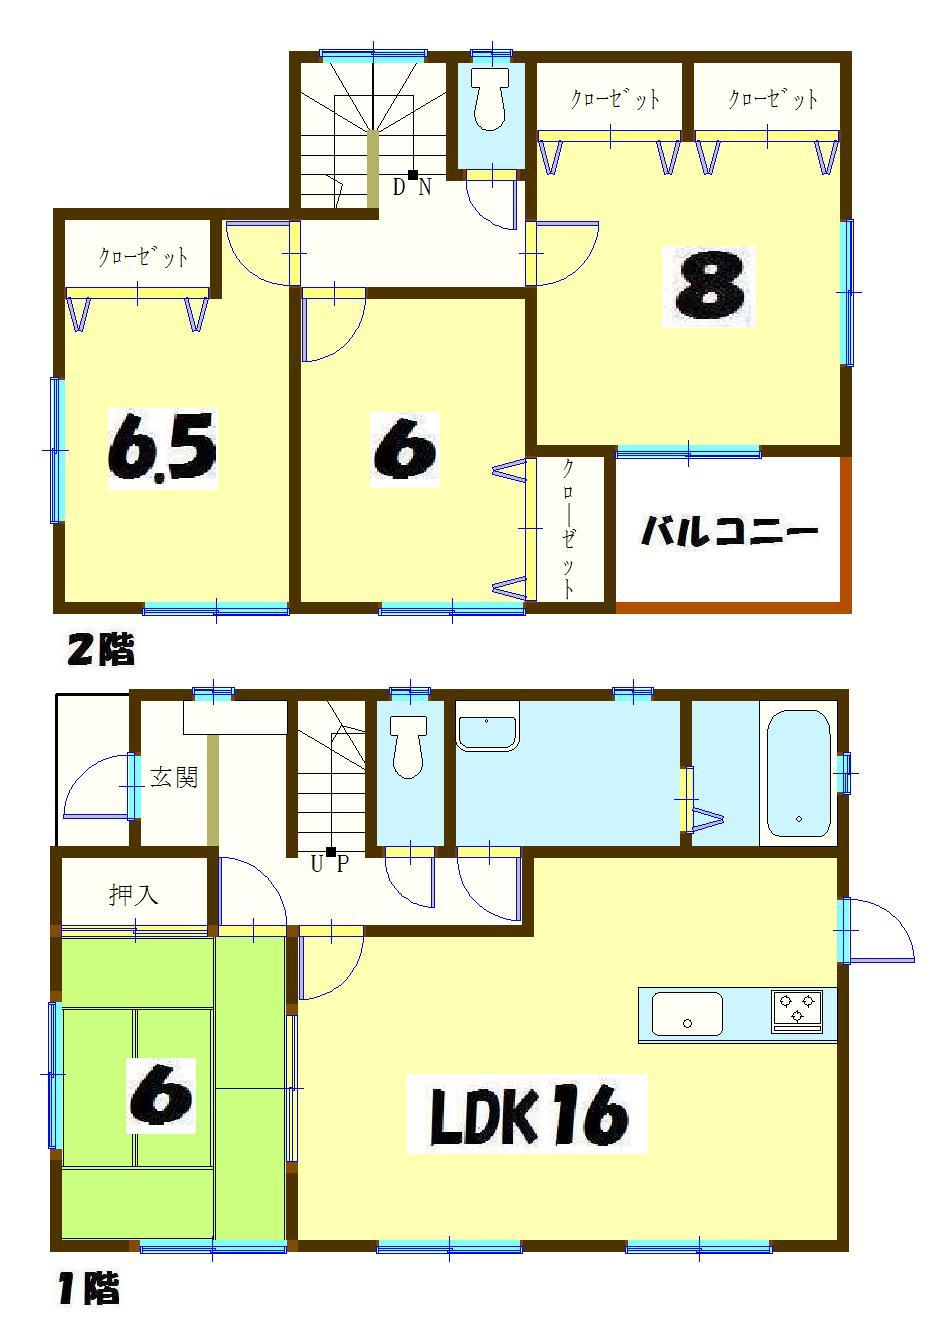 Floor plan. 20.5 million yen, 4LDK, Land area 127.57 sq m , Building area 104.33 sq m